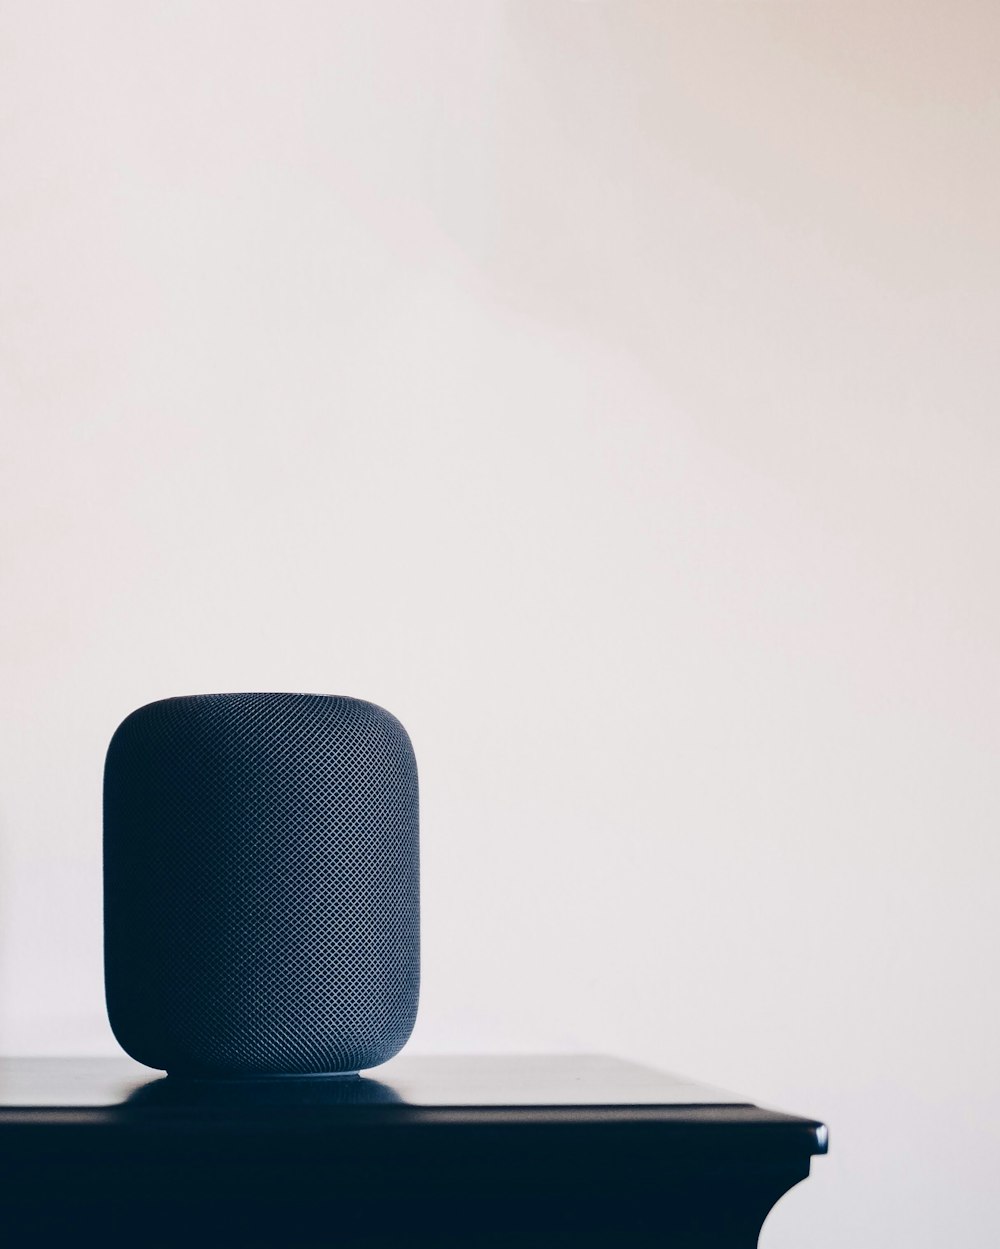 black Apple HomePod speaker on table